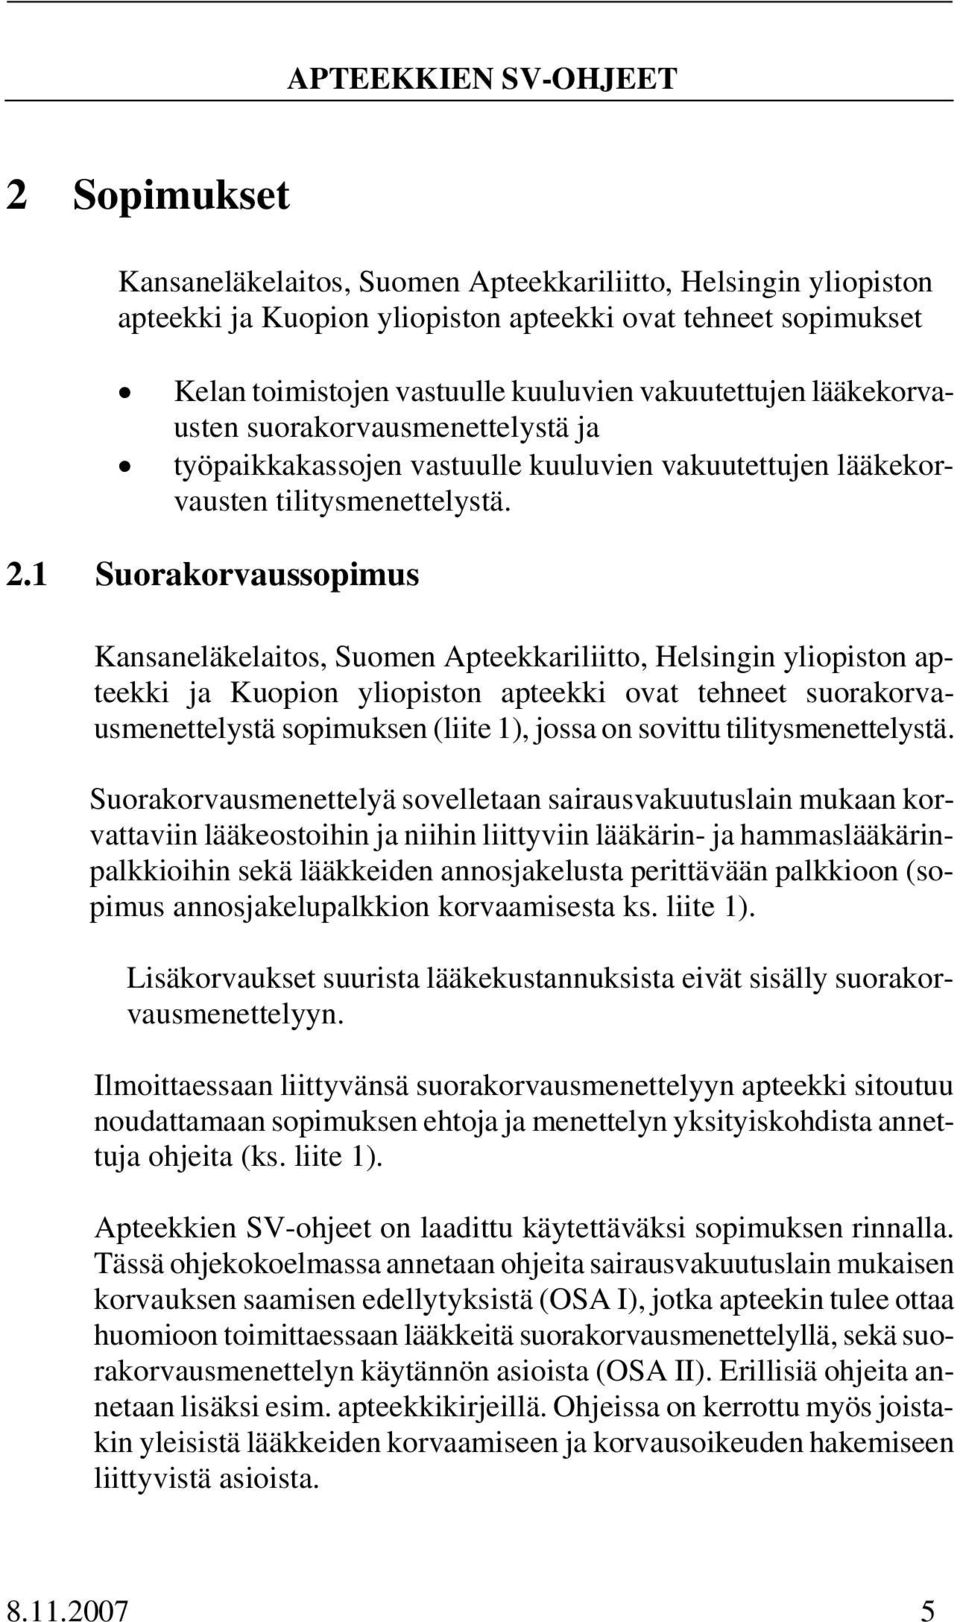 1 Suorakorvaussopimus Kansaneläkelaitos, Suomen Apteekkariliitto, Helsingin yliopiston apteekki ja Kuopion yliopiston apteekki ovat tehneet suorakorvausmenettelystä sopimuksen (liite 1), jossa on